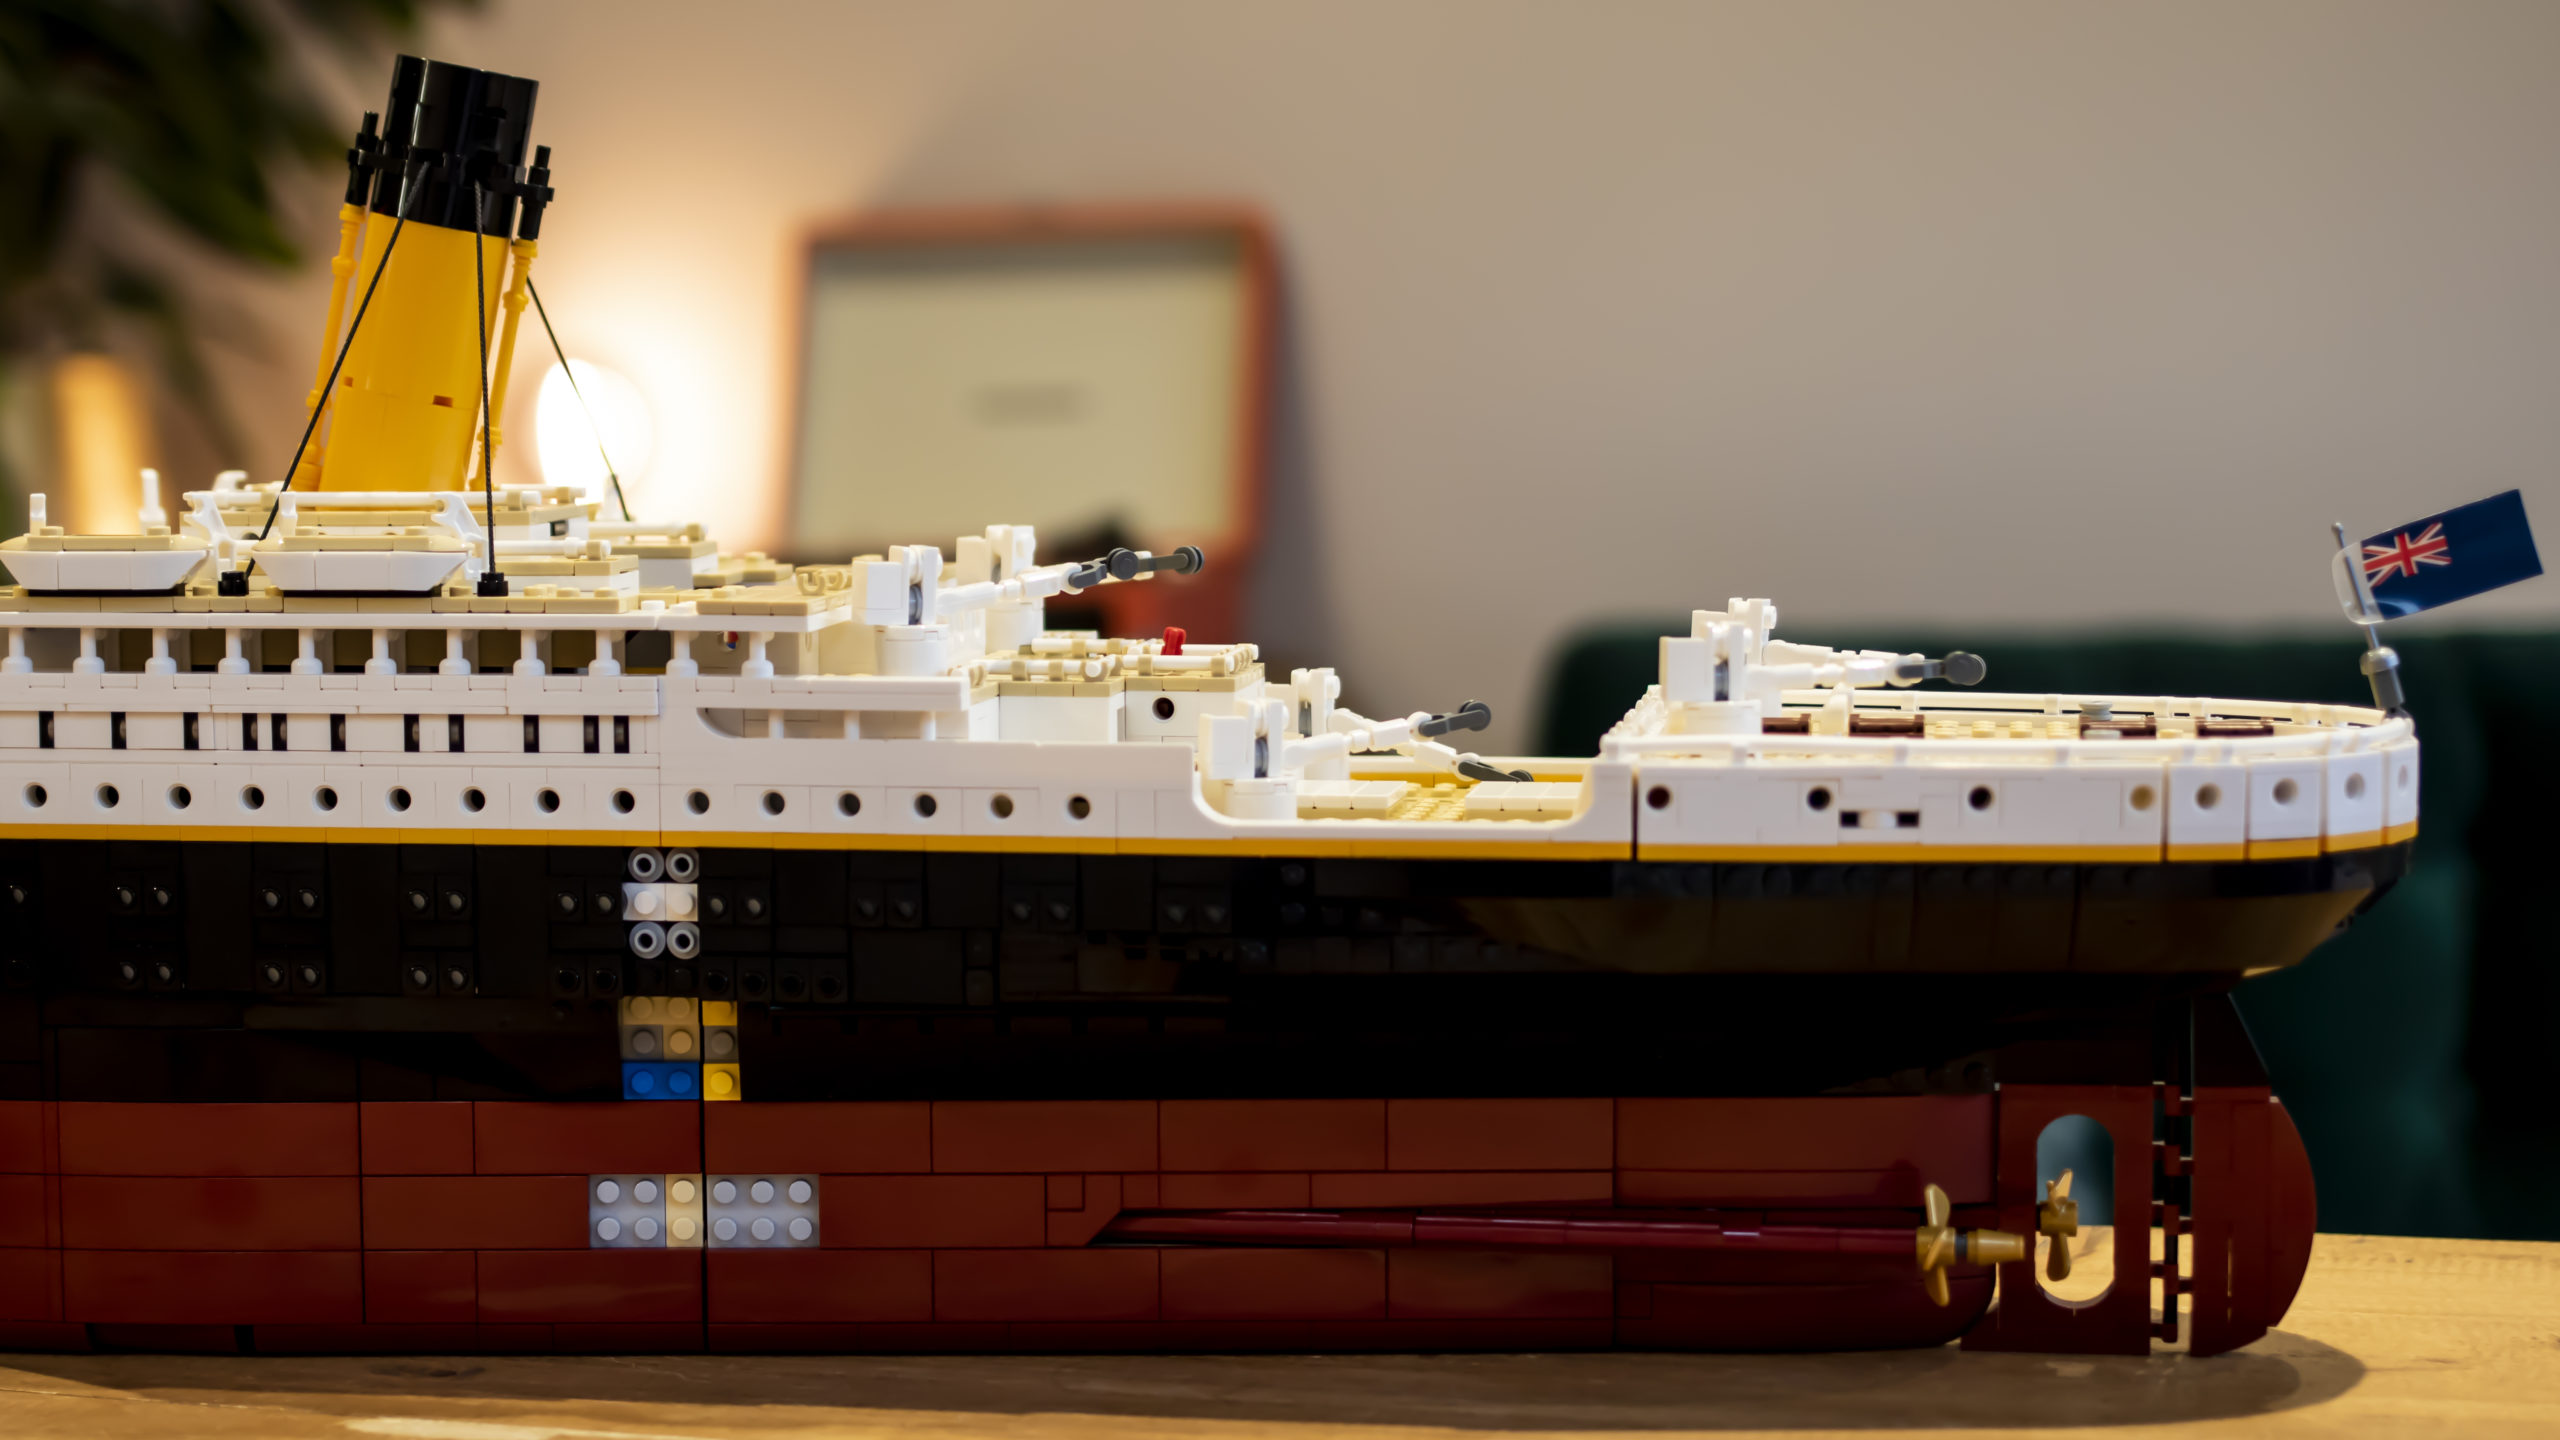 Modello RMS TITANIC Modello di crociera del Titanic con LUCI 80 cm